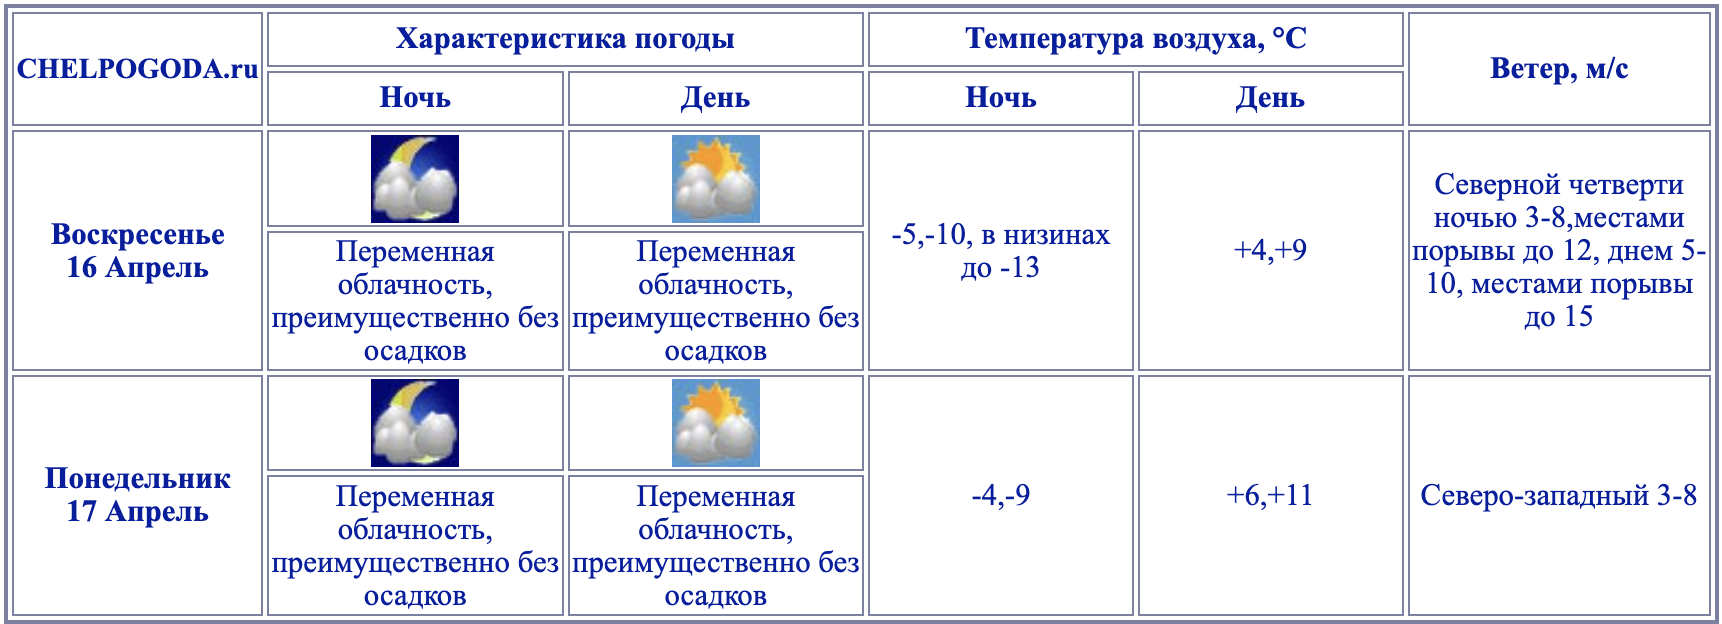 Температура в Челябинской области. Chelpogoda. Челпогода ру на 3